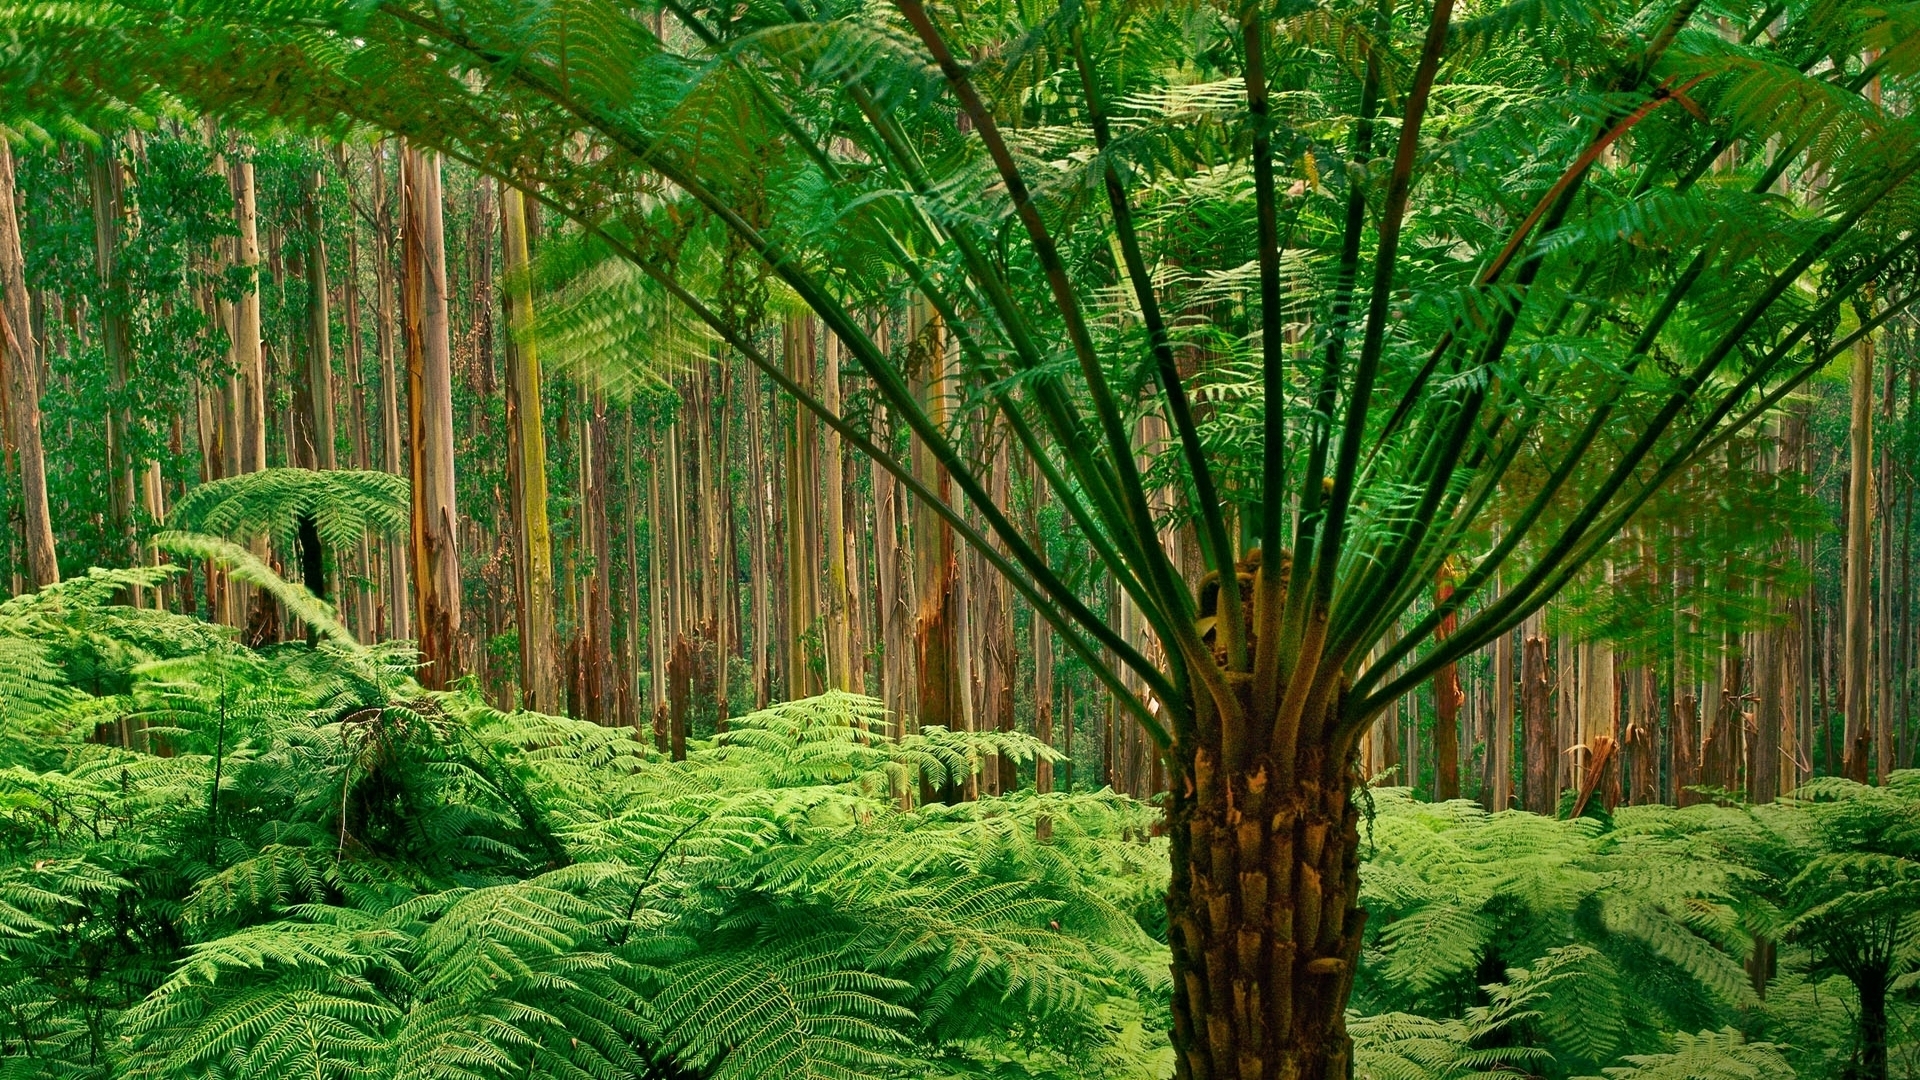 ジャングル壁紙hd 木 自然 森林 密林 自然の風景 Wallpaperuse